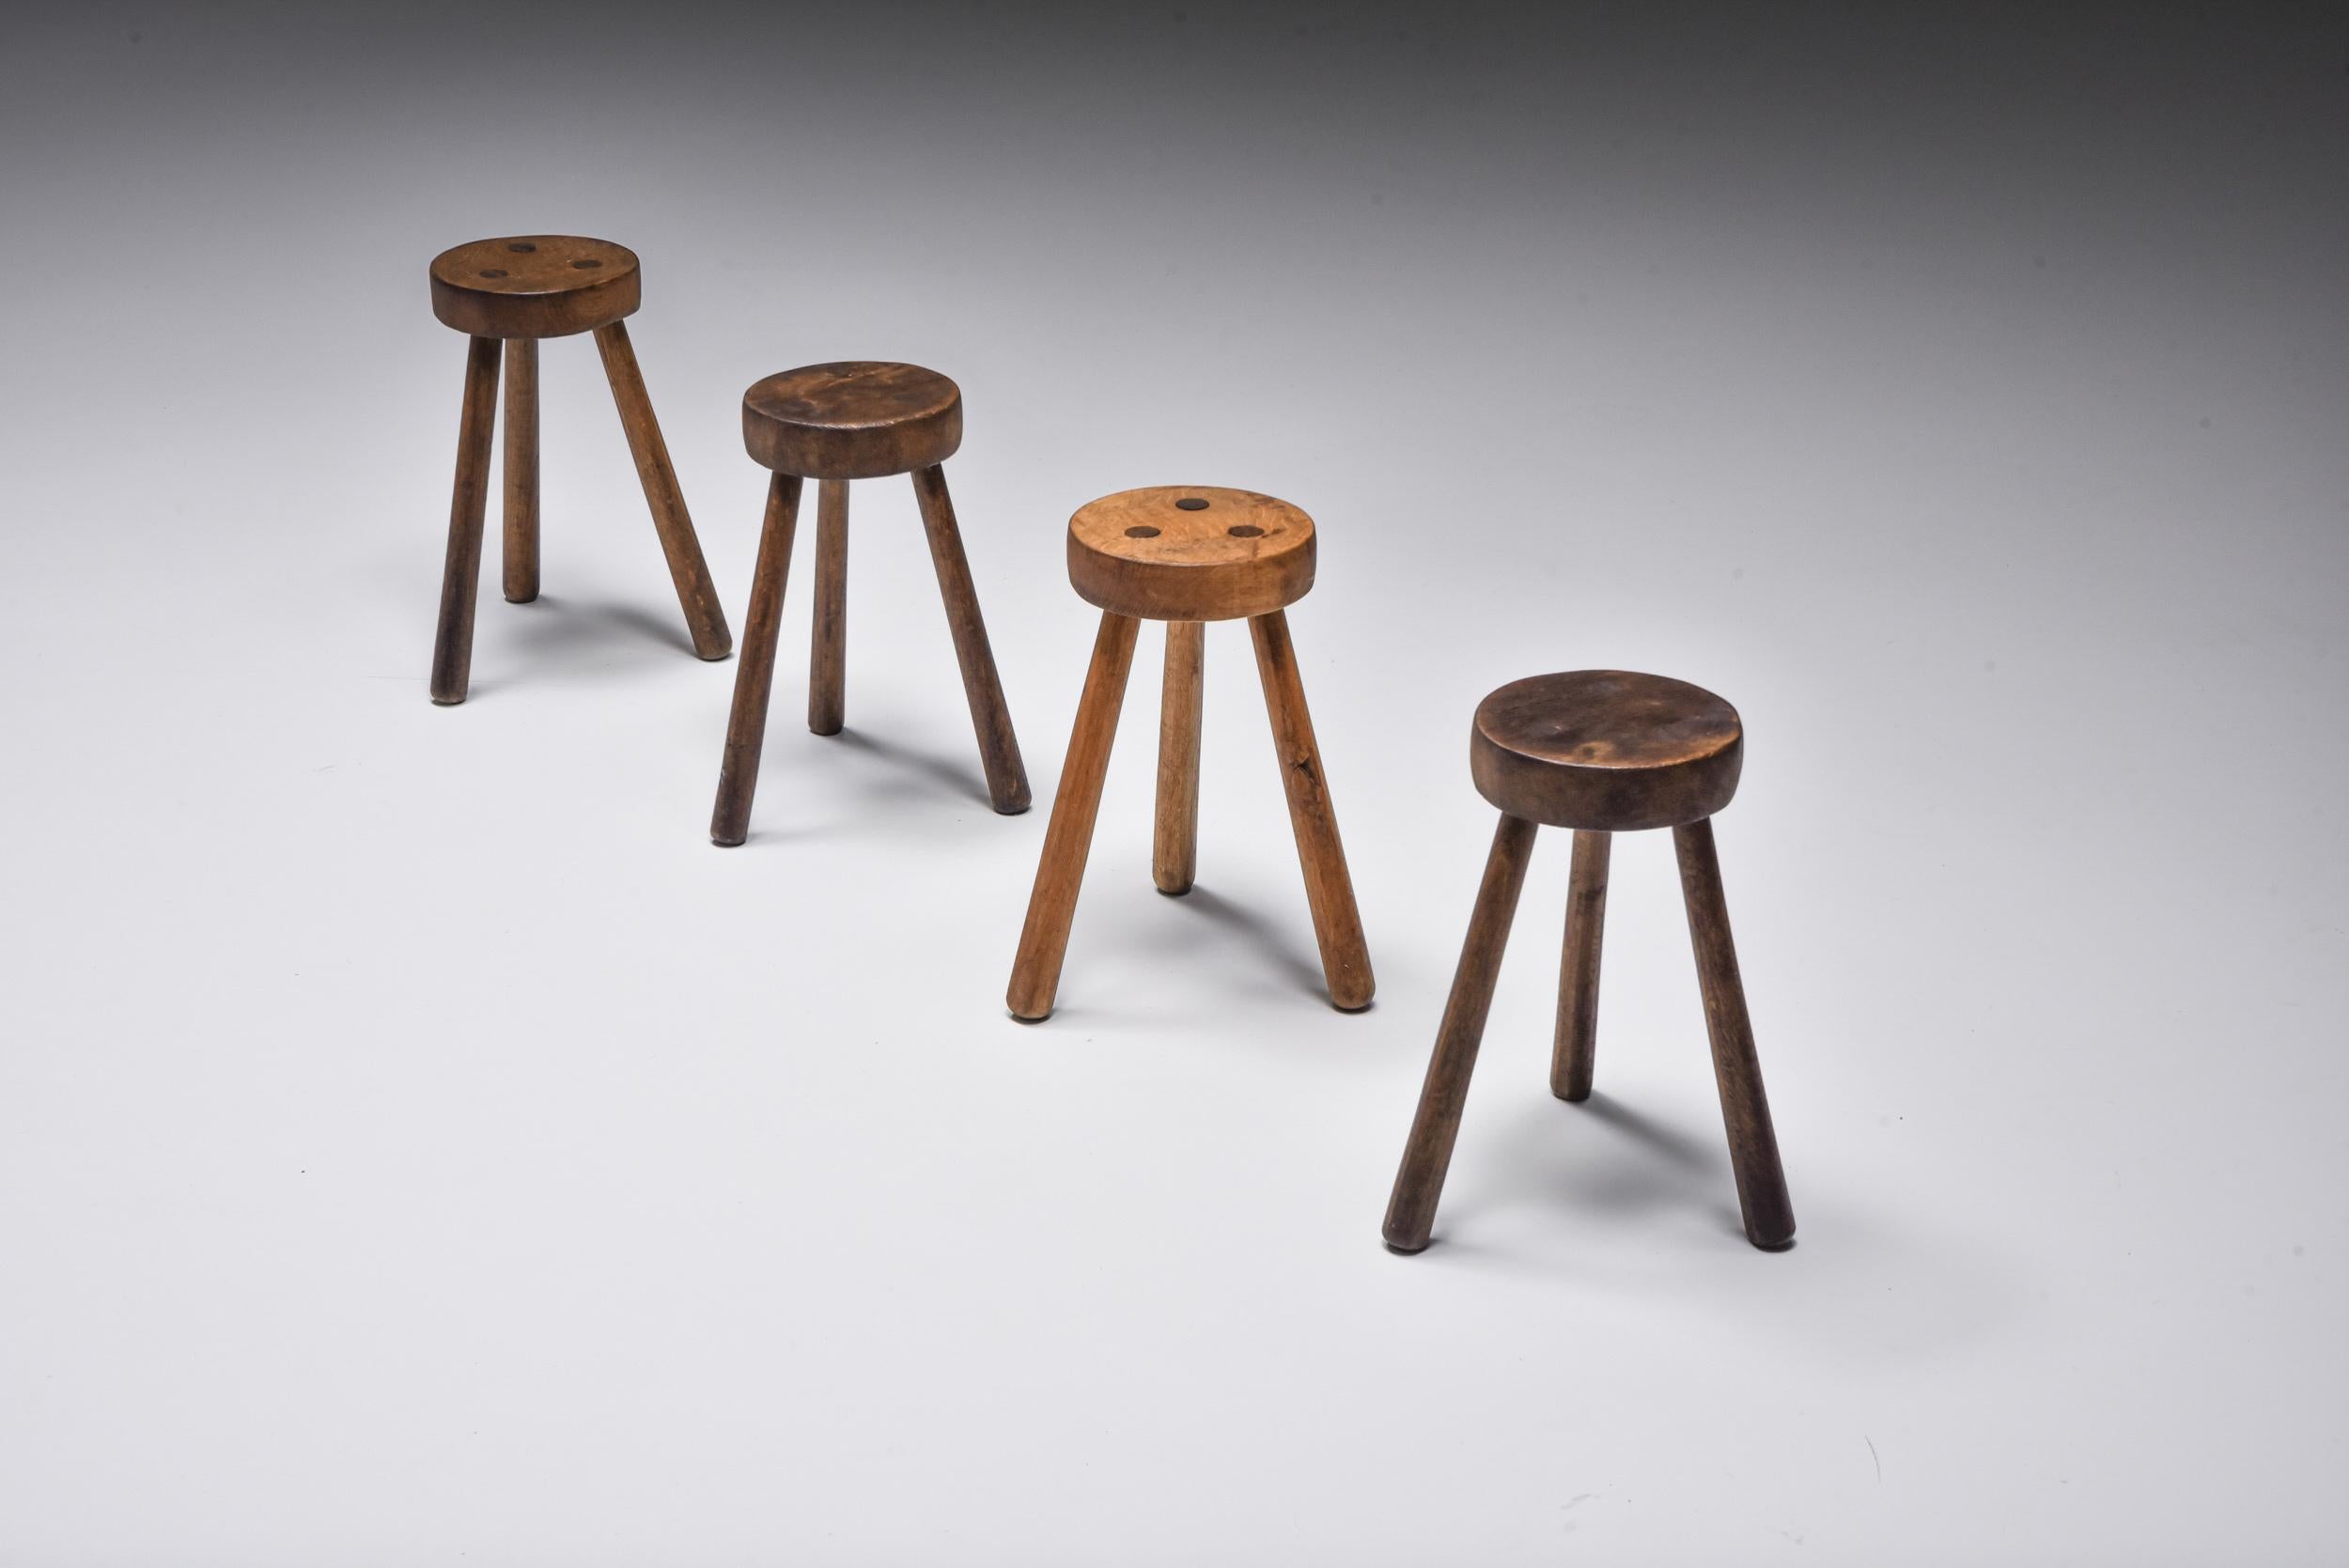 Rustikal; Frankreich; Mid-Century Modern; Hocker; Barhocker; 

Rustikale Holzhocker, hergestellt in Frankreich, wir haben vier Stück verfügbar. Jeder Hocker hat drei Beine und eine runde Sitzfläche. Jeder Stuhl ist aufgrund seiner Holzpatina